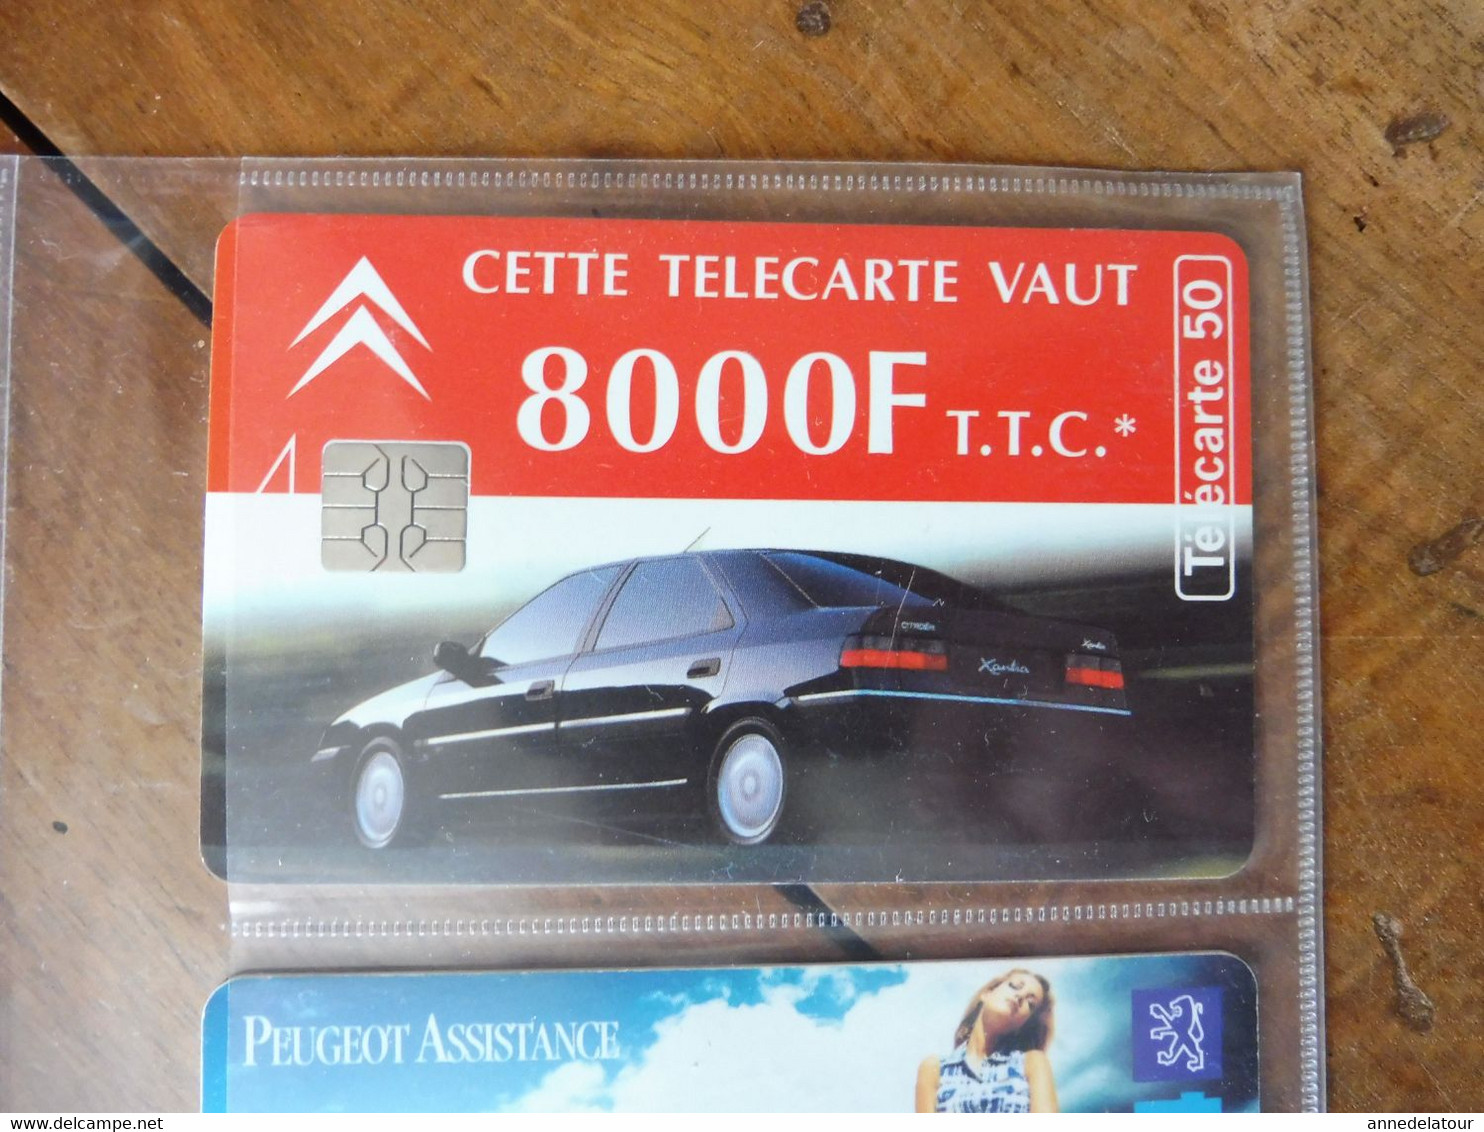 10 télécartes (sur l'automobile) FRANCE TELECOM  Fiesta, Ford Ka, Peugeot, Ford, Peugeot Assistance, Renault, Citroën..